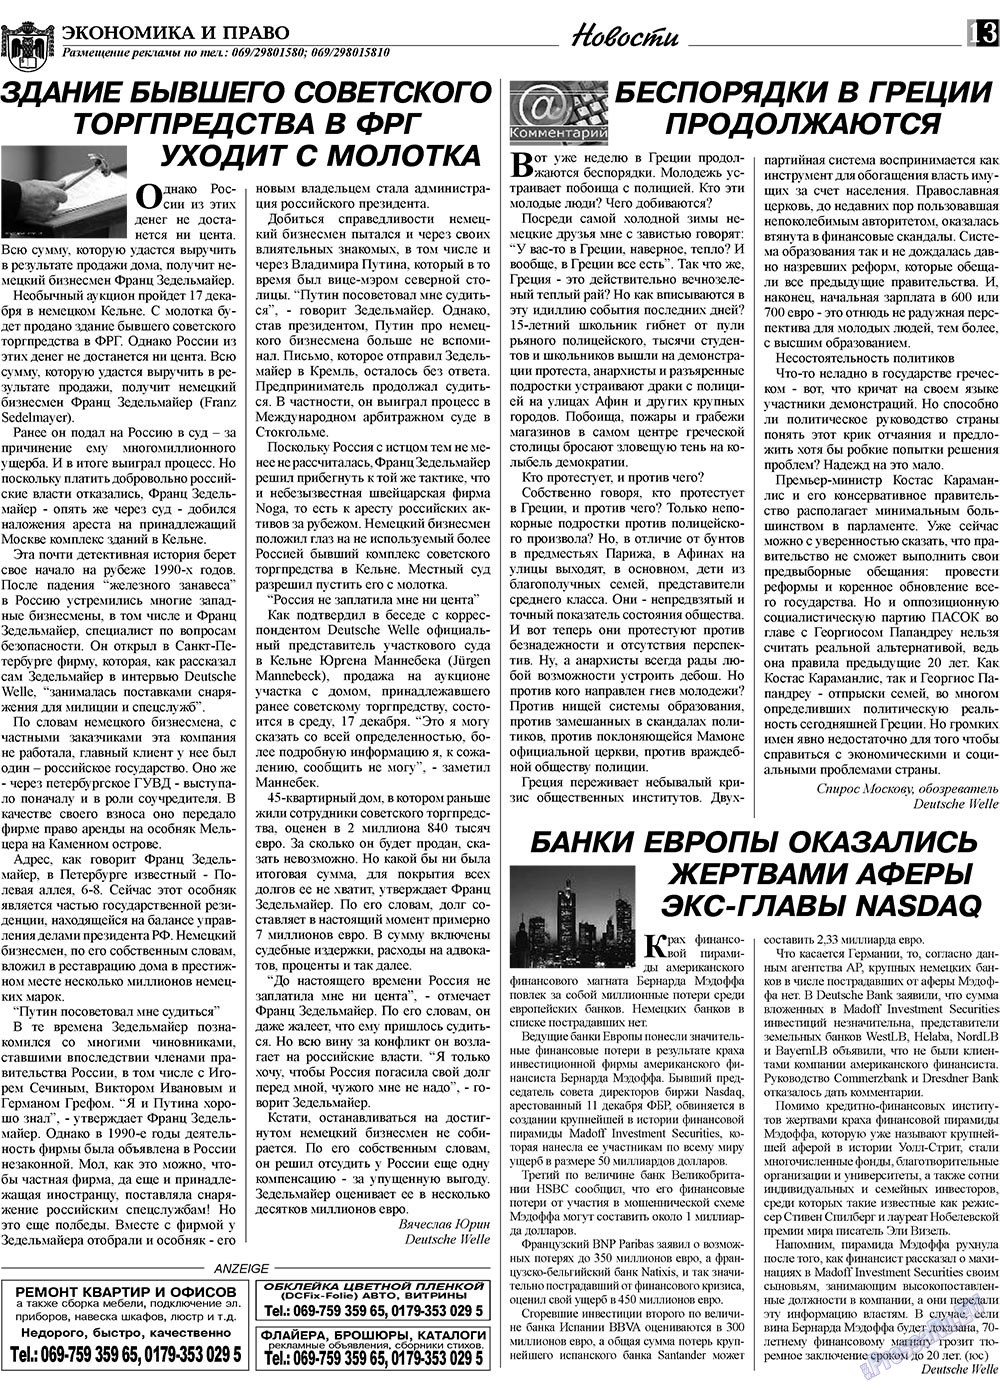 Экономика и право, газета. 2009 №1 стр.13